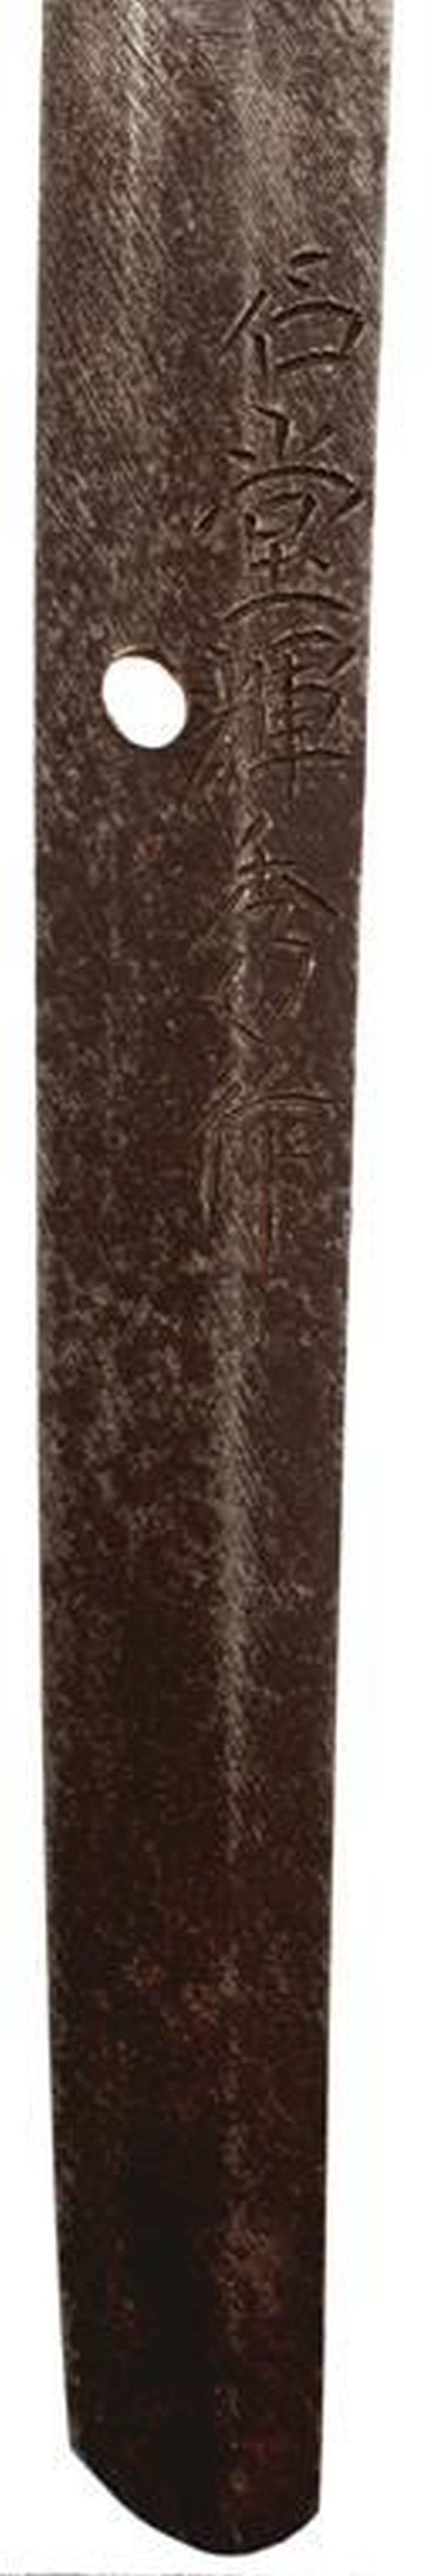 A GENDAITO, 66.5cm blade with one mekugi-ana signed Ishido Teruhide saku, midare hamon, nashiji - Image 2 of 17